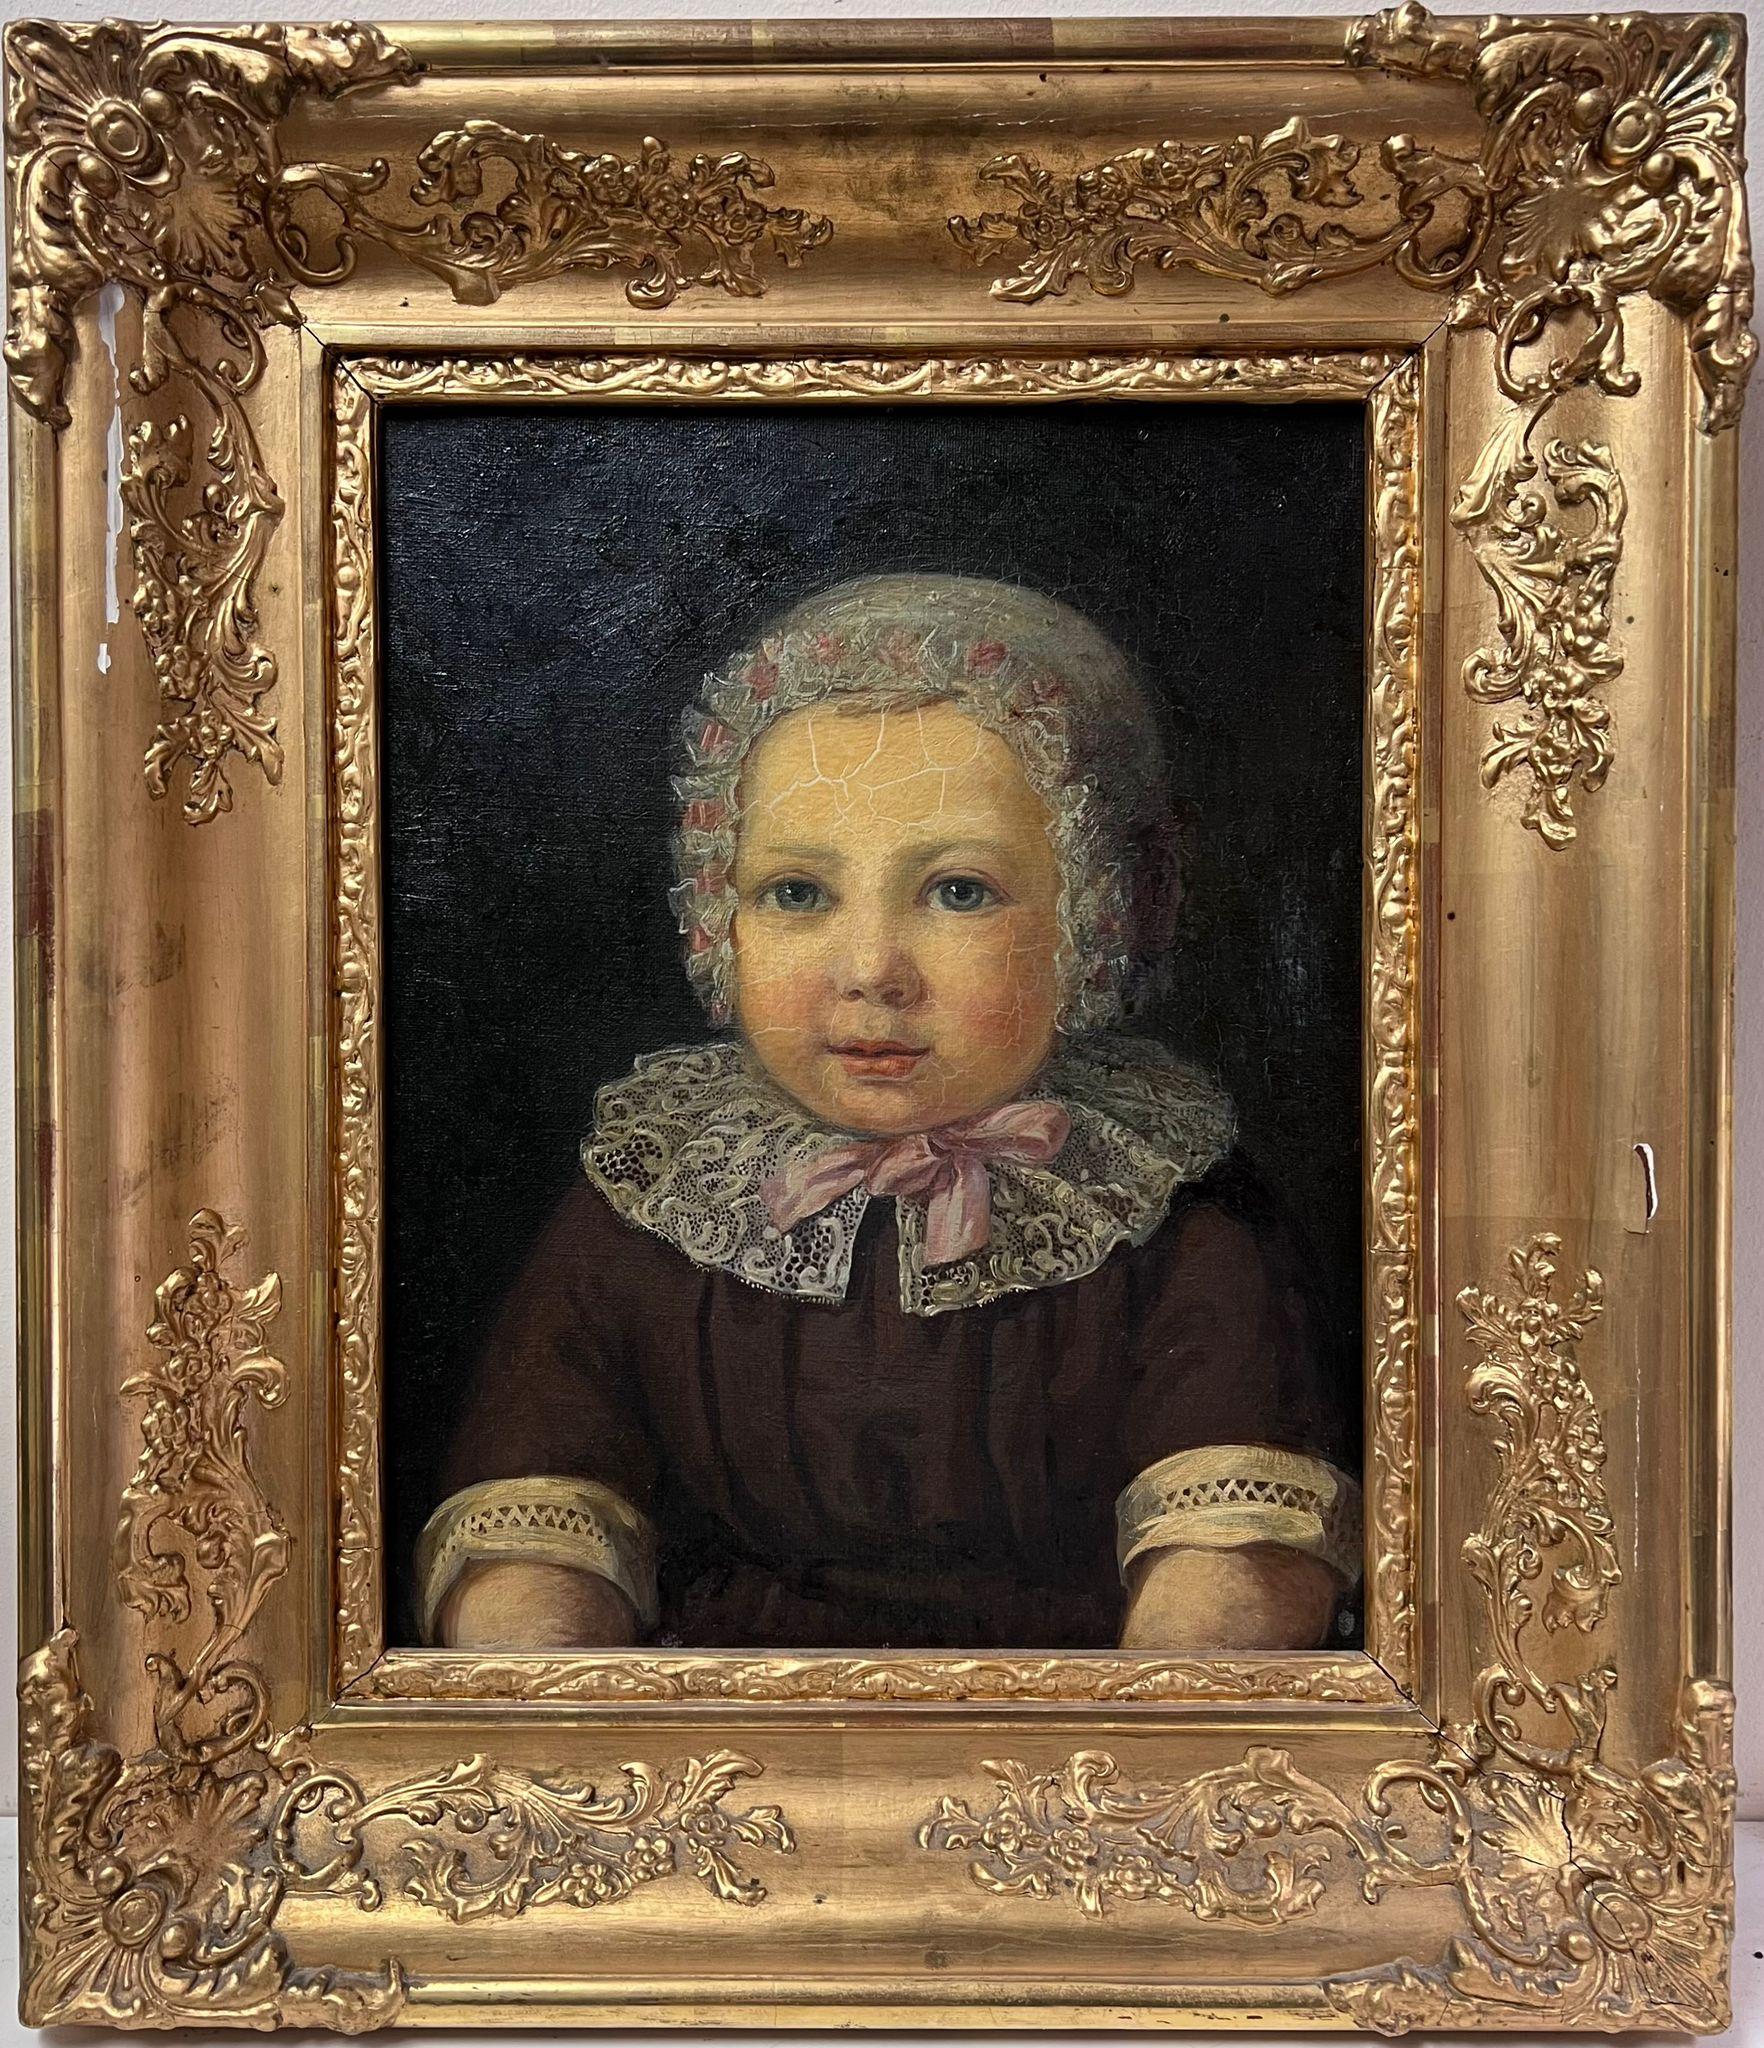 Portrait d'un jeune enfant, peinture à l'huile européenne ancienne dans un cadre doré